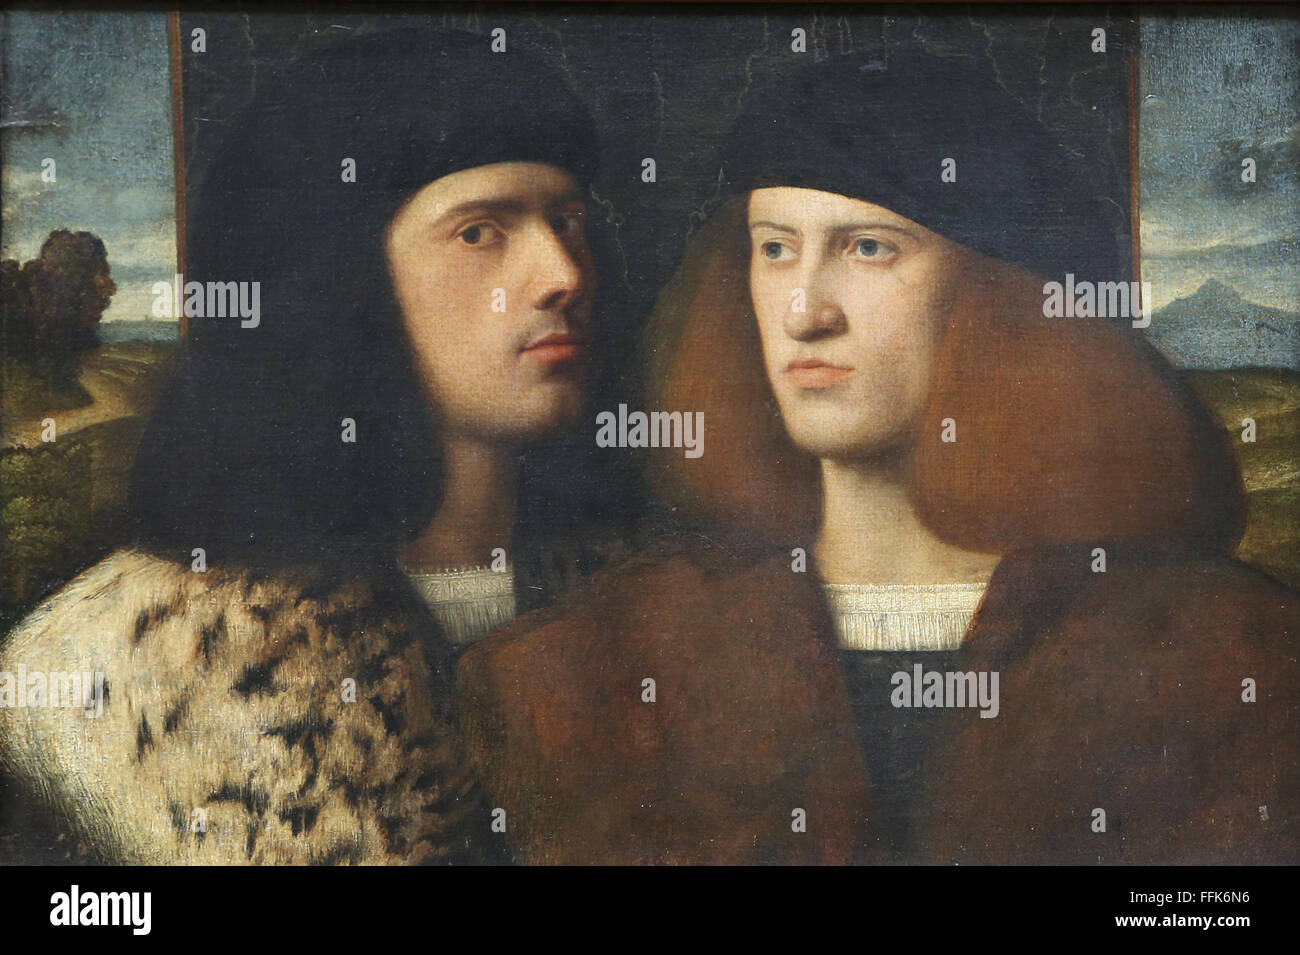 Portrait de deux jeunes hommes. 16e siècle. Renaissance. Artiste inconnu. Musée du Louvre. Paris. La France. Banque D'Images